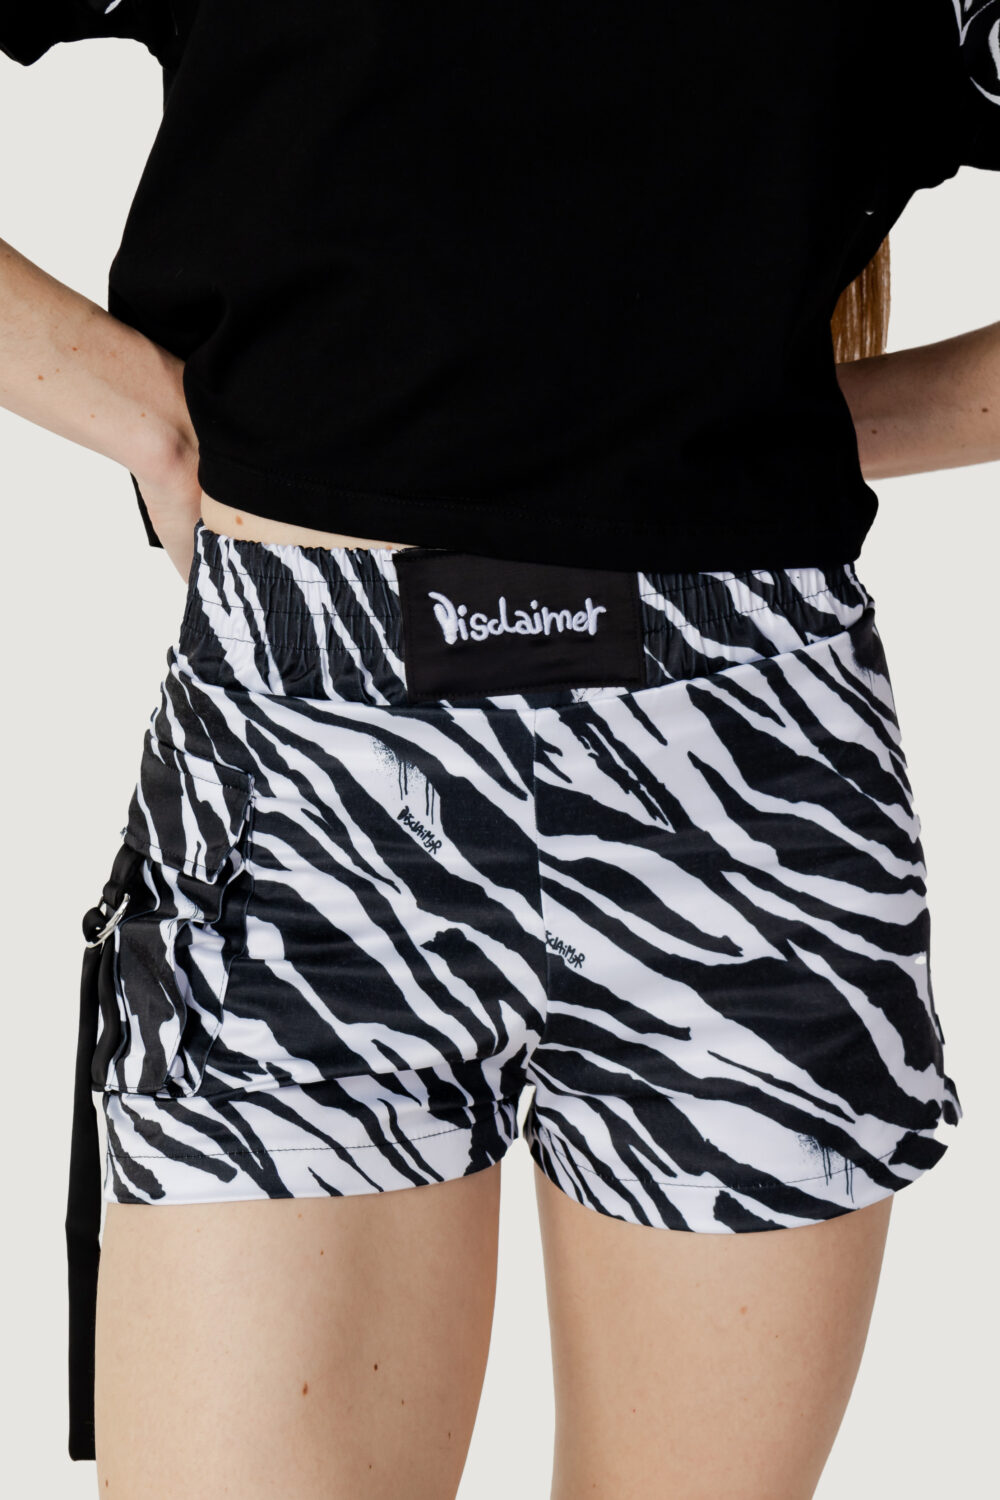 Shorts Disclaimer zebra pattern Black-White - Foto 1